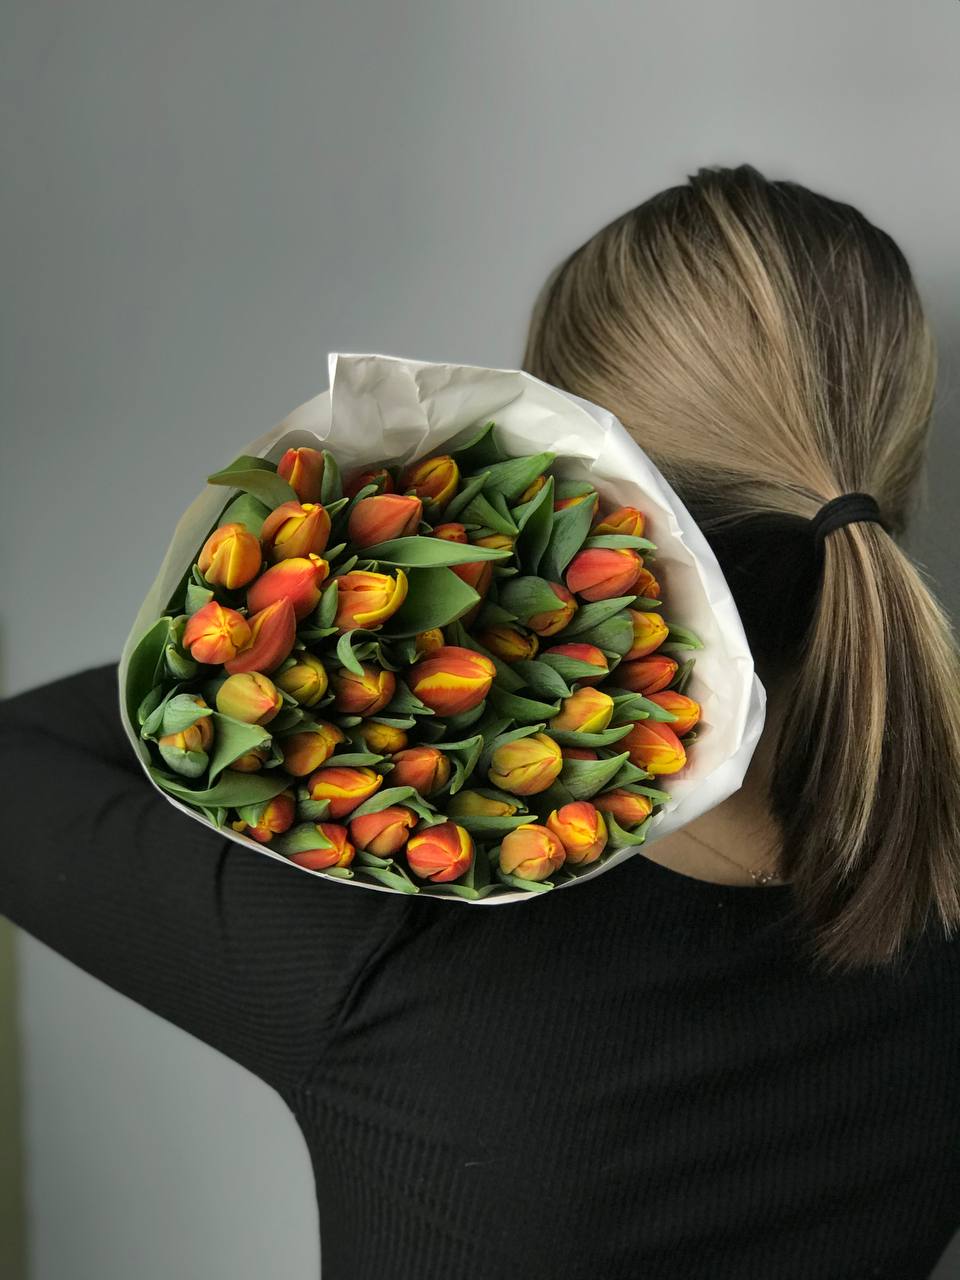 Оранжевые тюльпаны оптом 50 шт с доставкой по Астане